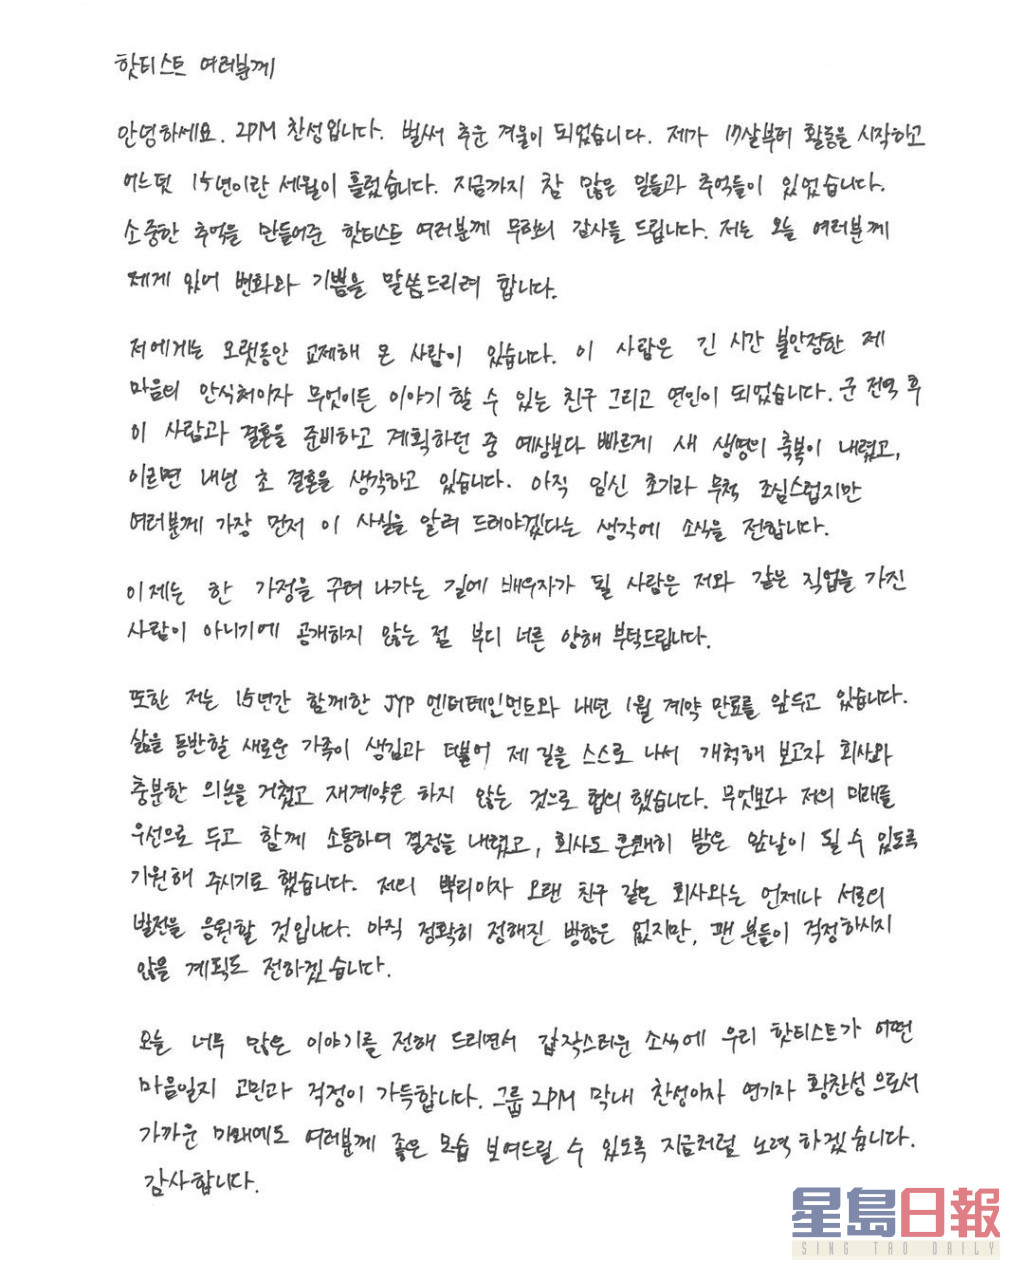 燦盛去年底以親筆信一次公佈奉子成婚及離巢JYP。